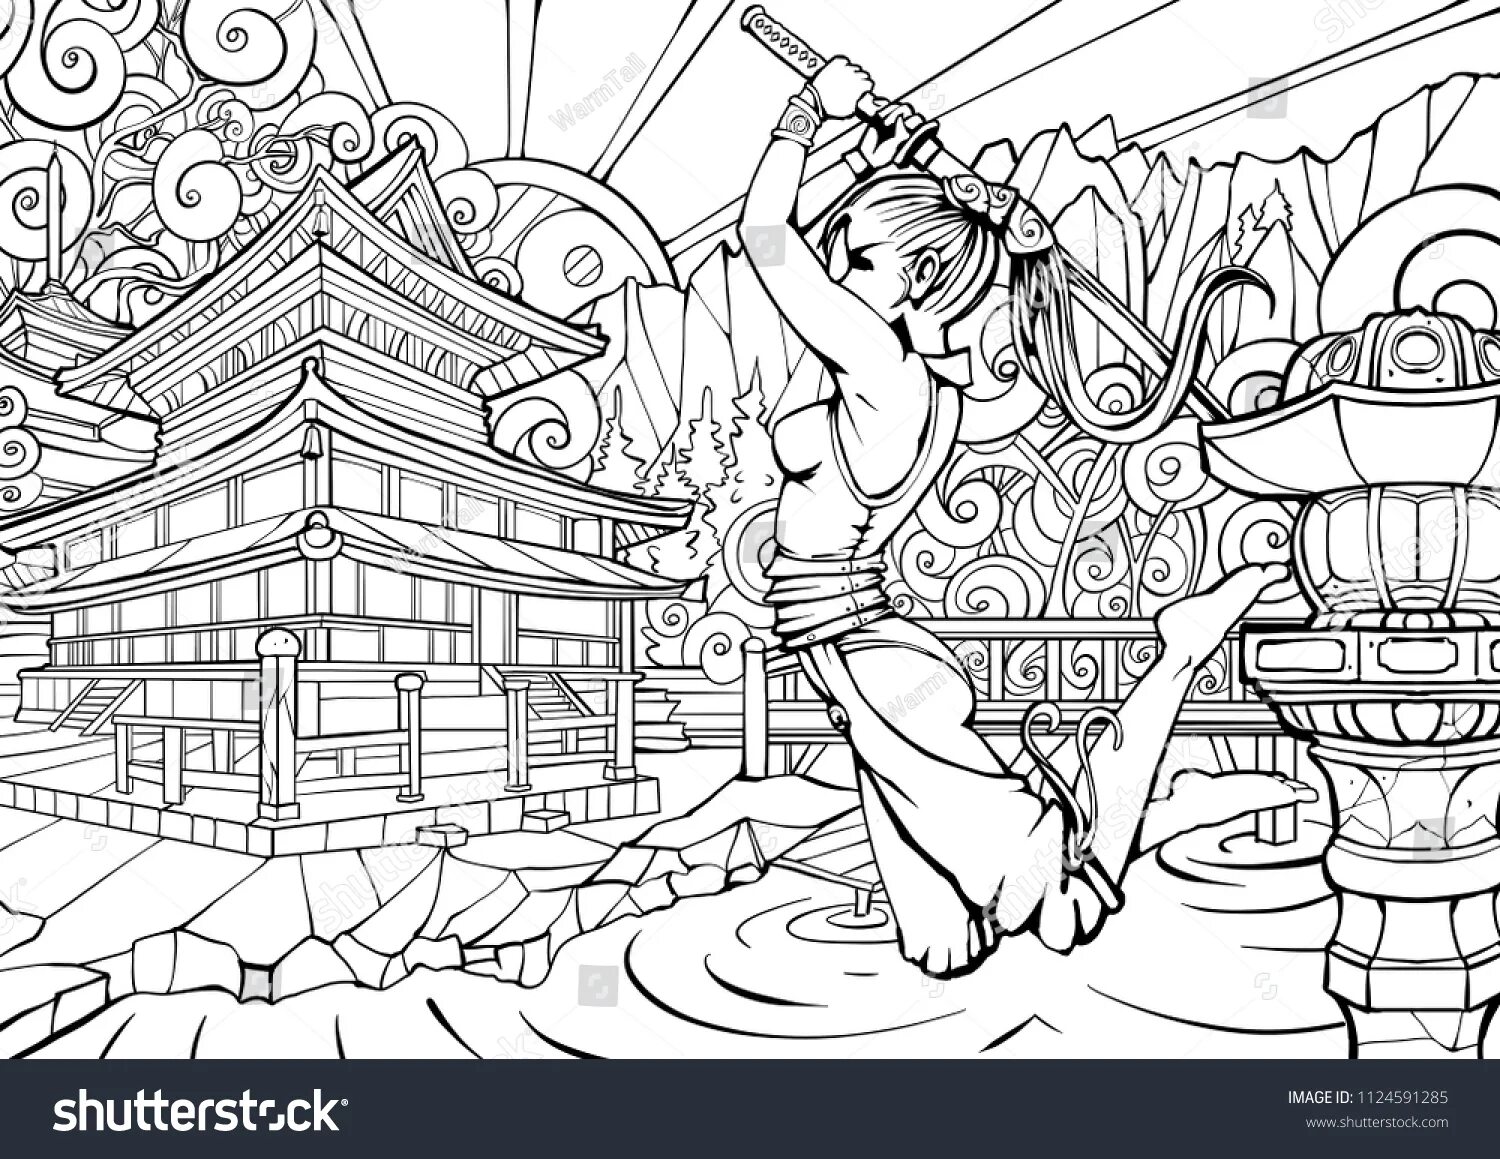 Lavish coloring of ancient japan